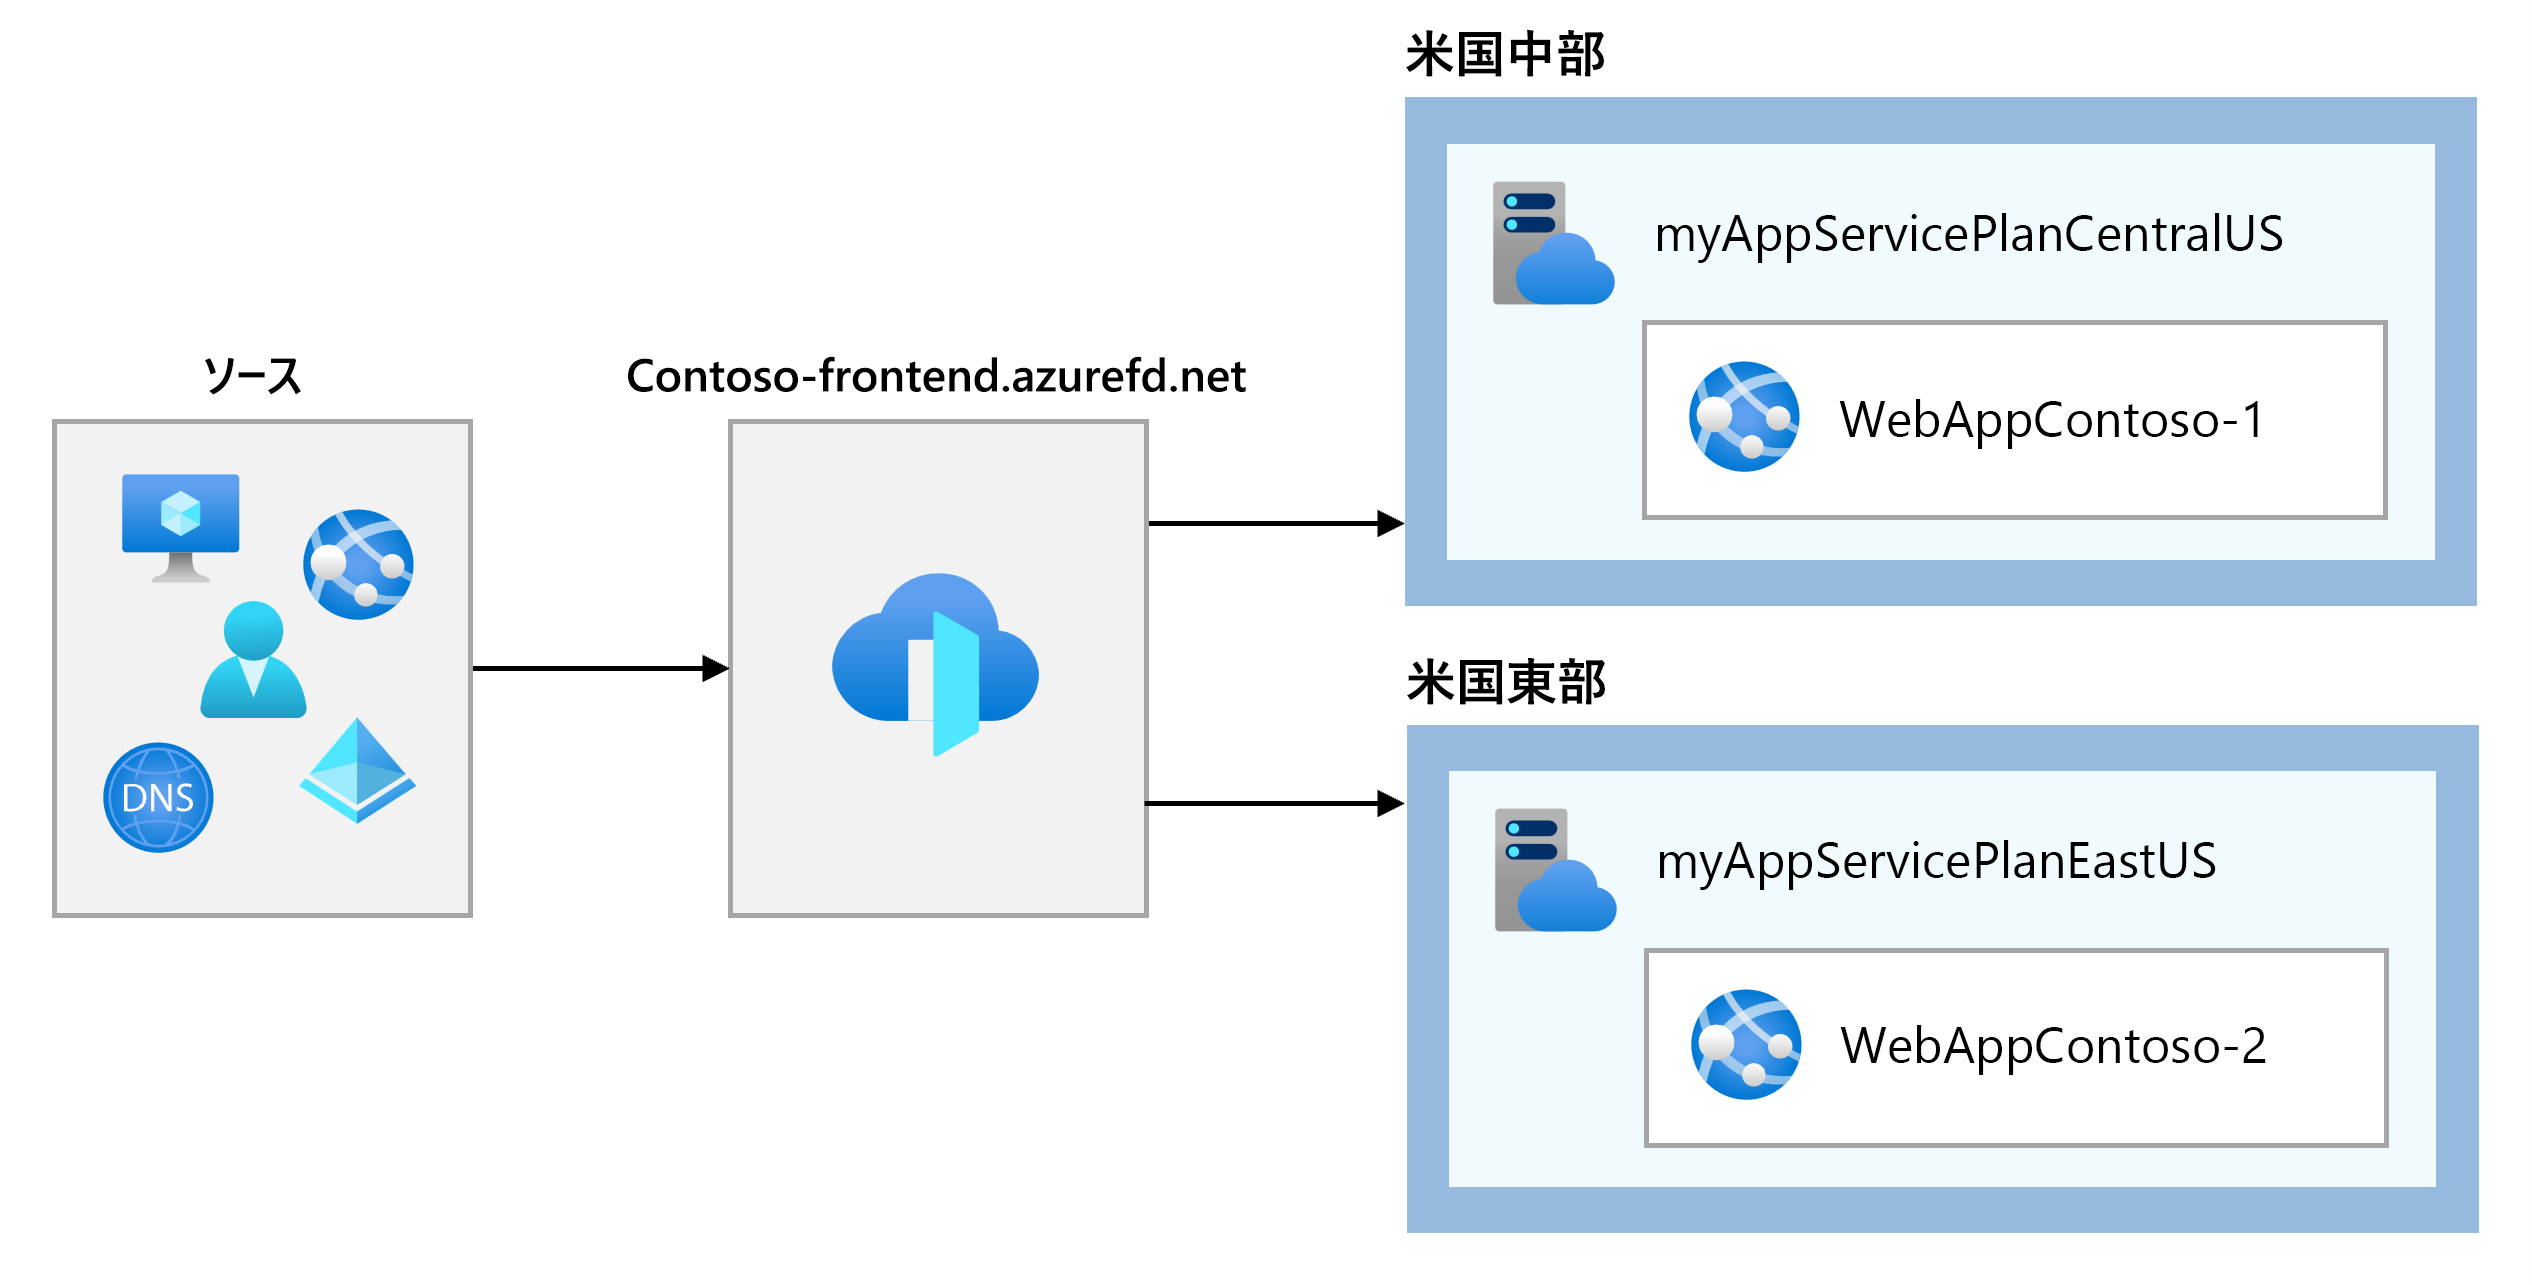 Network configuration for Azure Front Door.